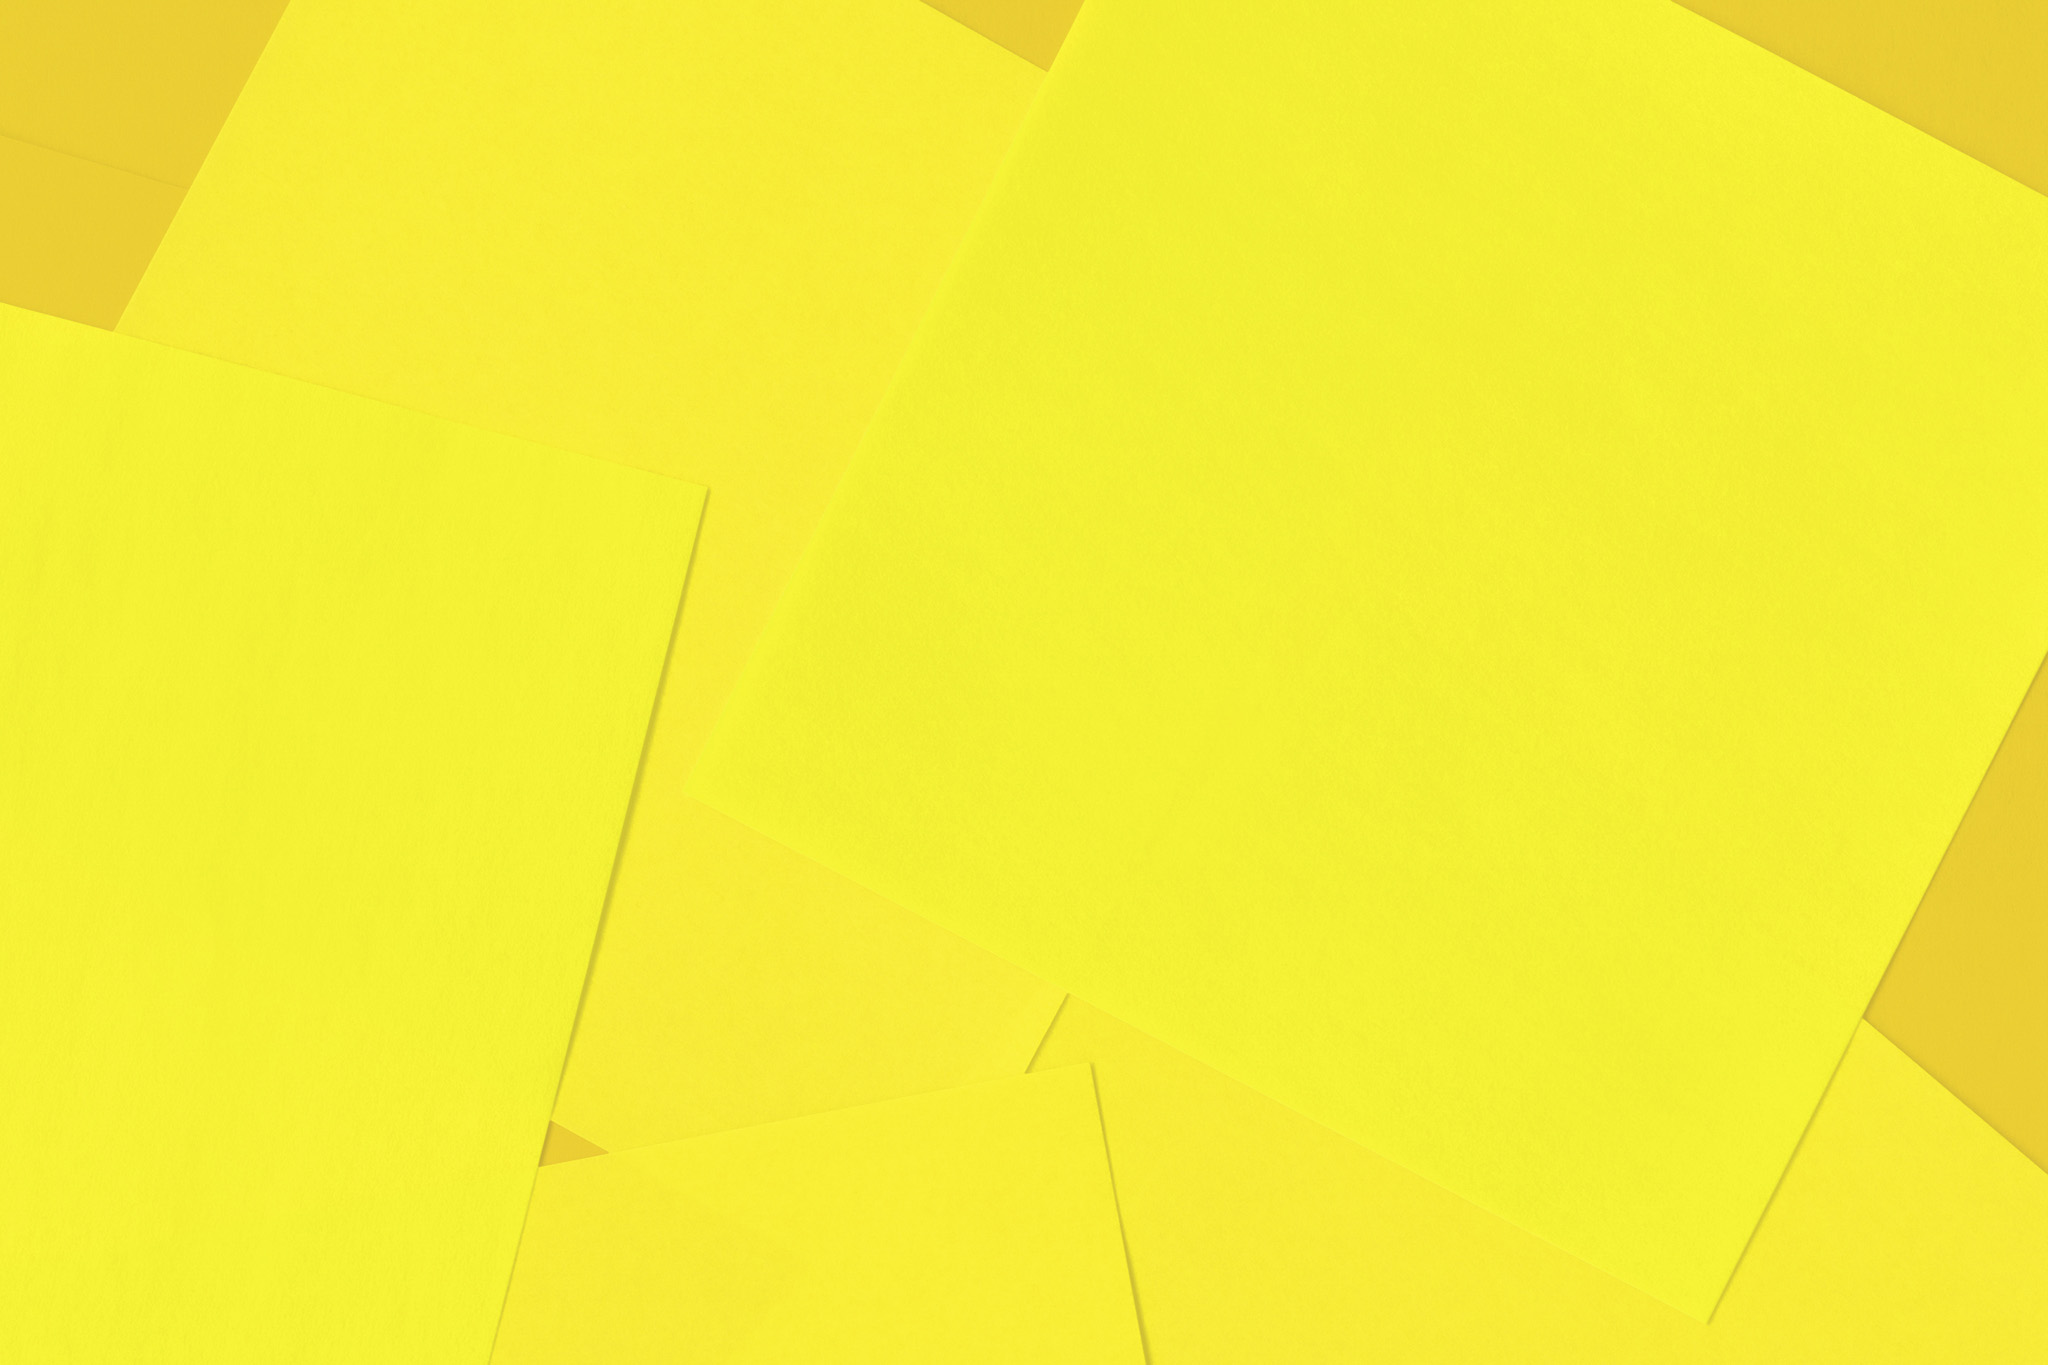 シンプルな黄色のおしゃれな素材 の画像素材を無料ダウンロード 1 背景フリー素材 Beiz Images